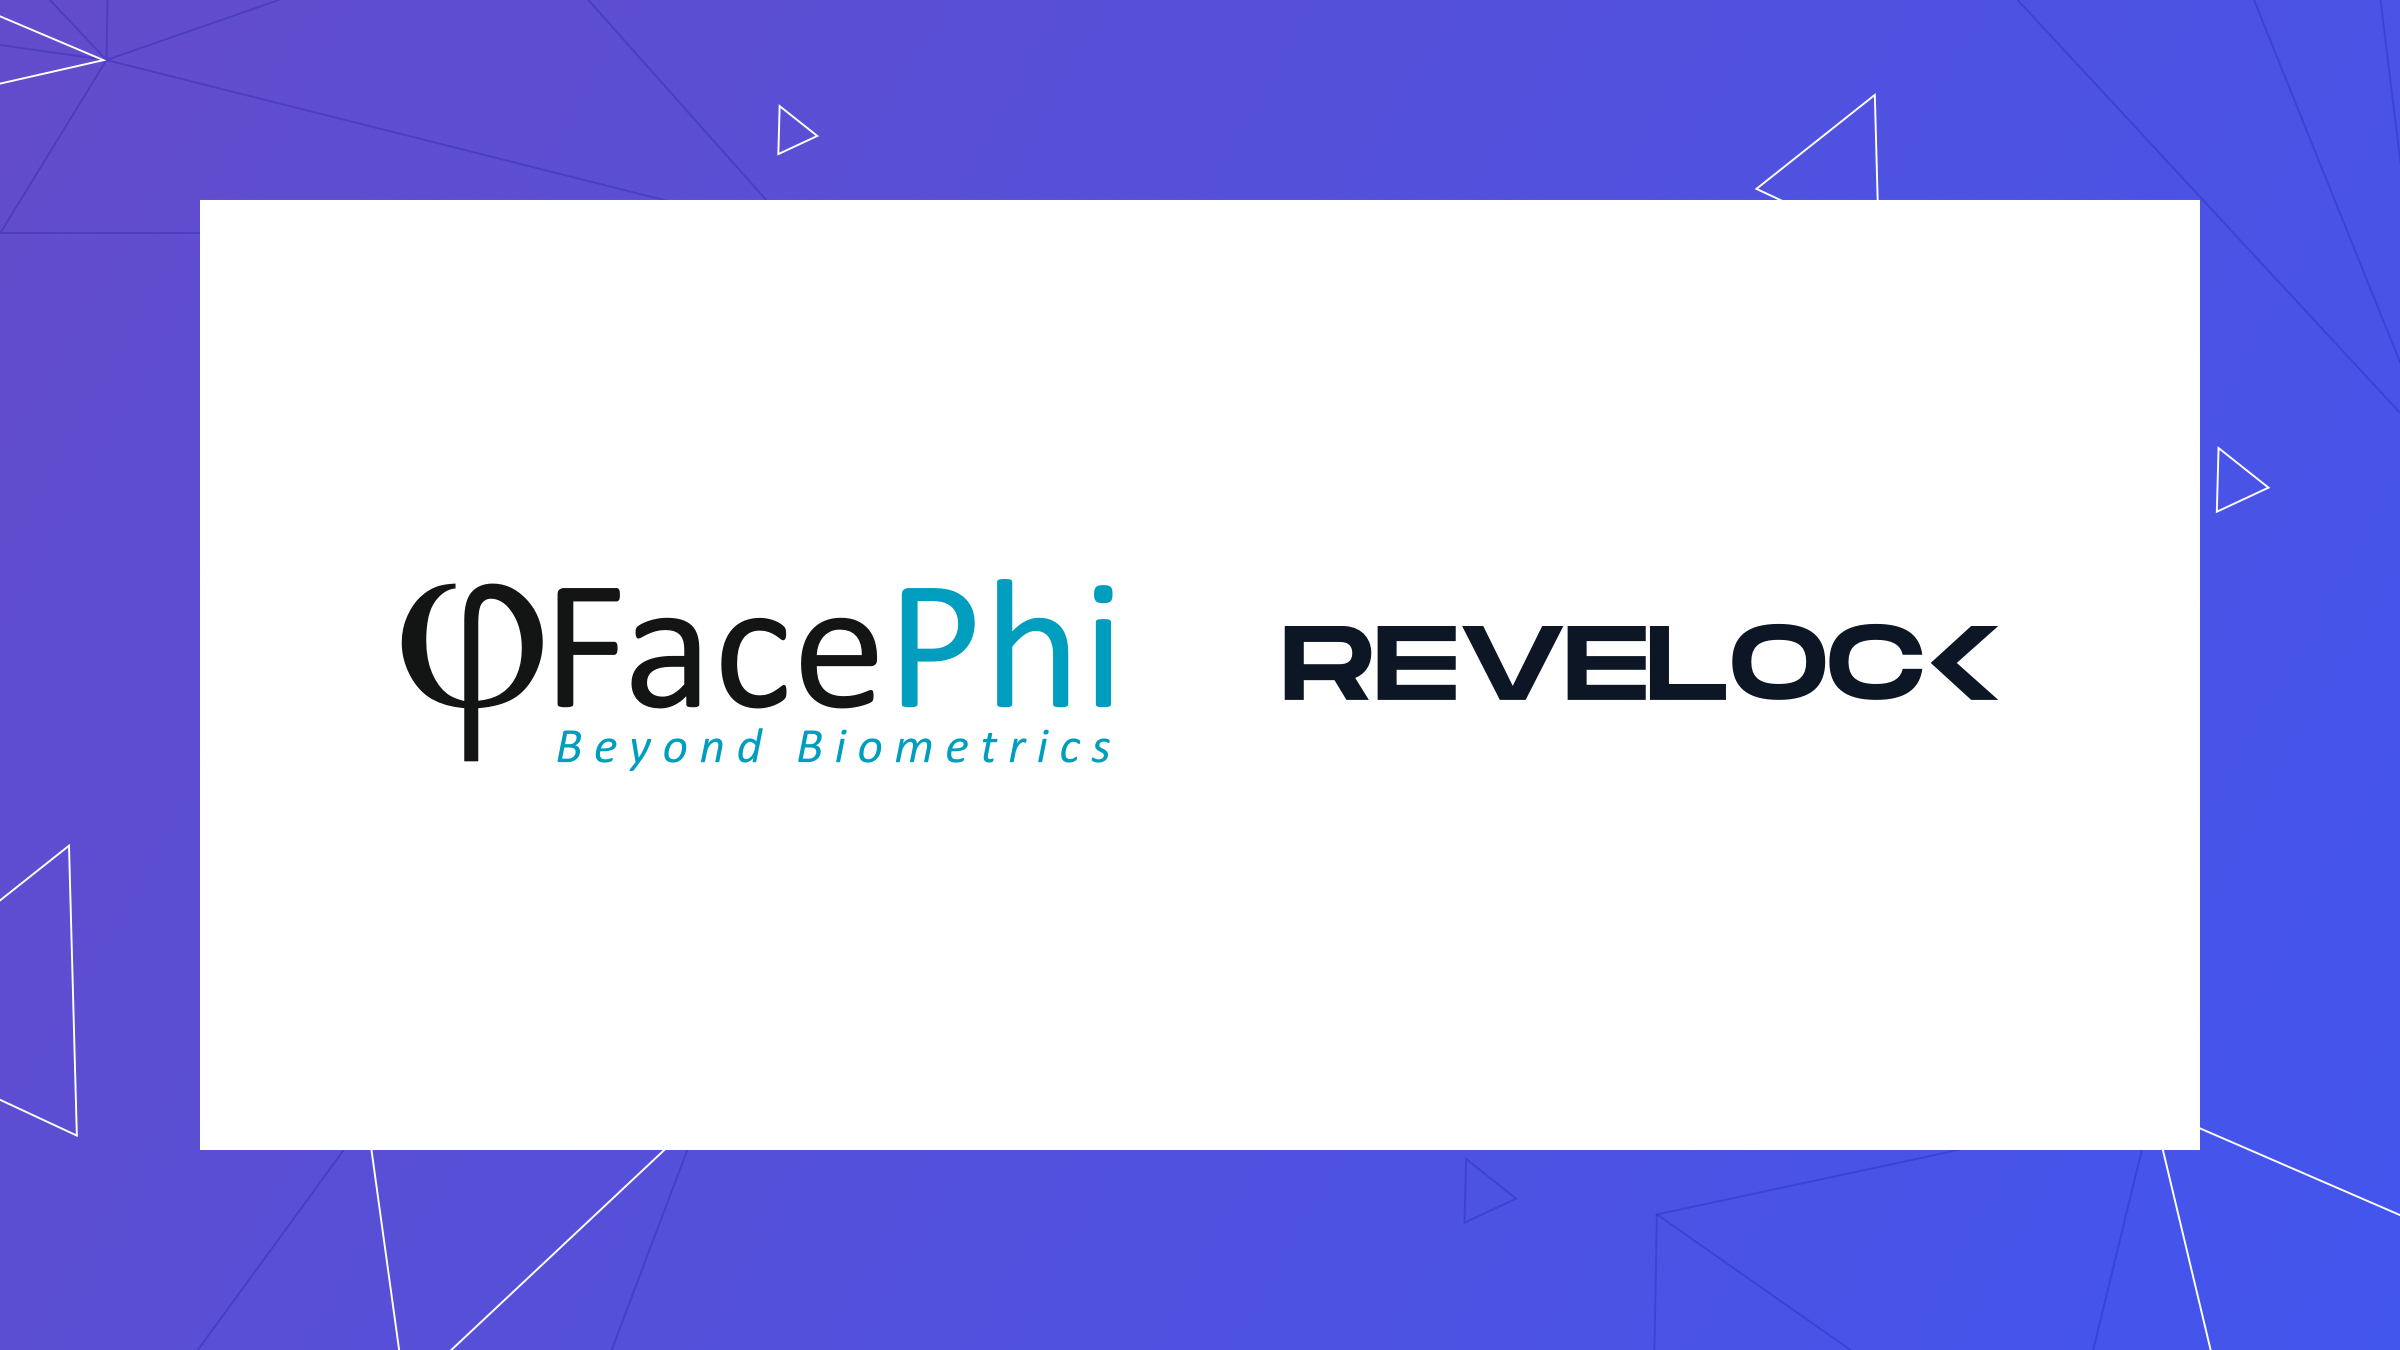 Logos FacePhi e Revelock